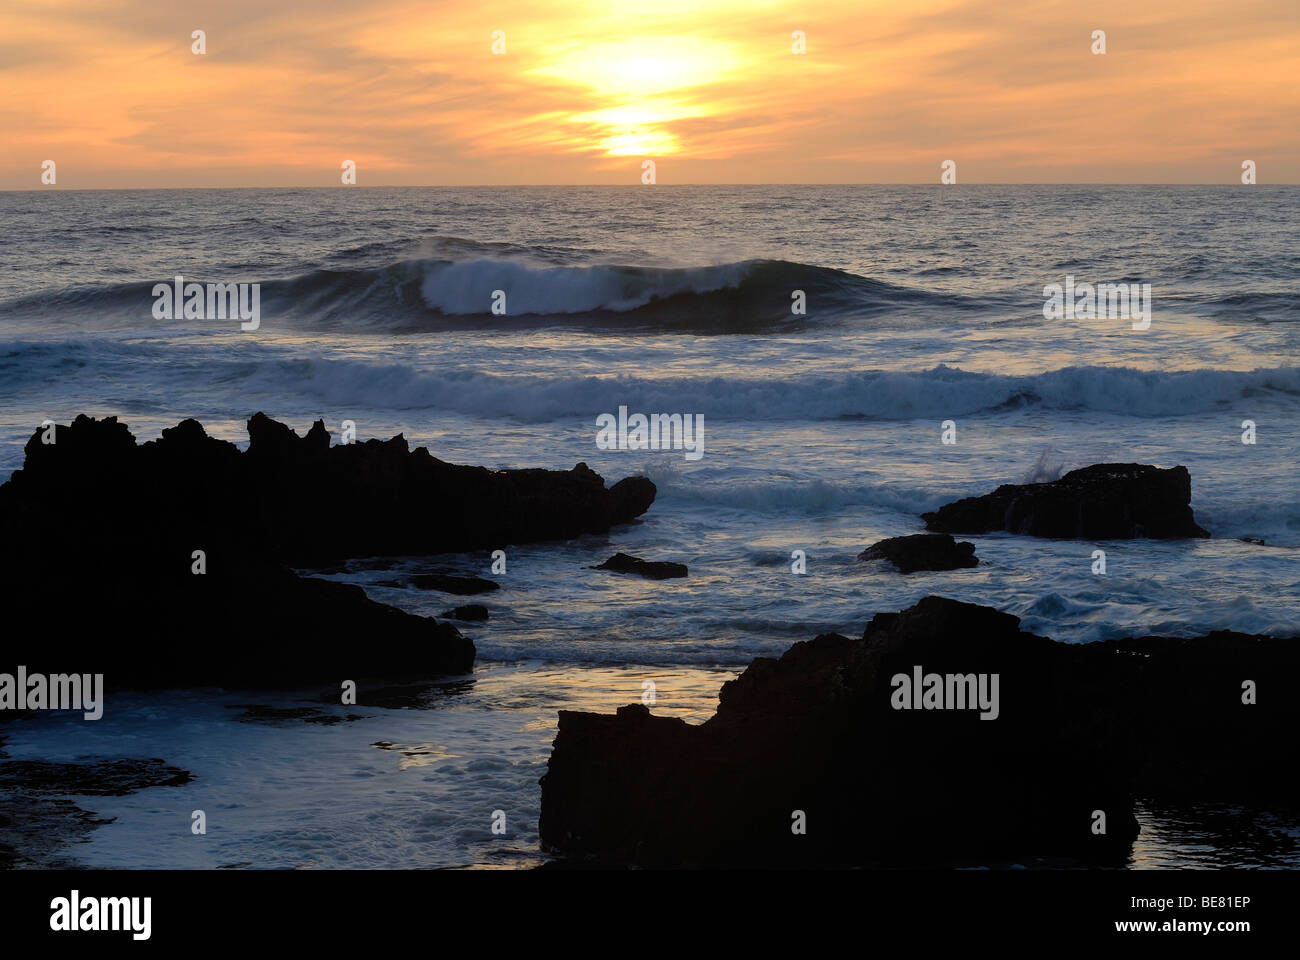 Vagues se brisant sur les rochers au coucher du soleil, près de la plage de Guincho, Costa de Lisboa, District de Lisbonne, Portugal, Estremadura, Atlantique Banque D'Images